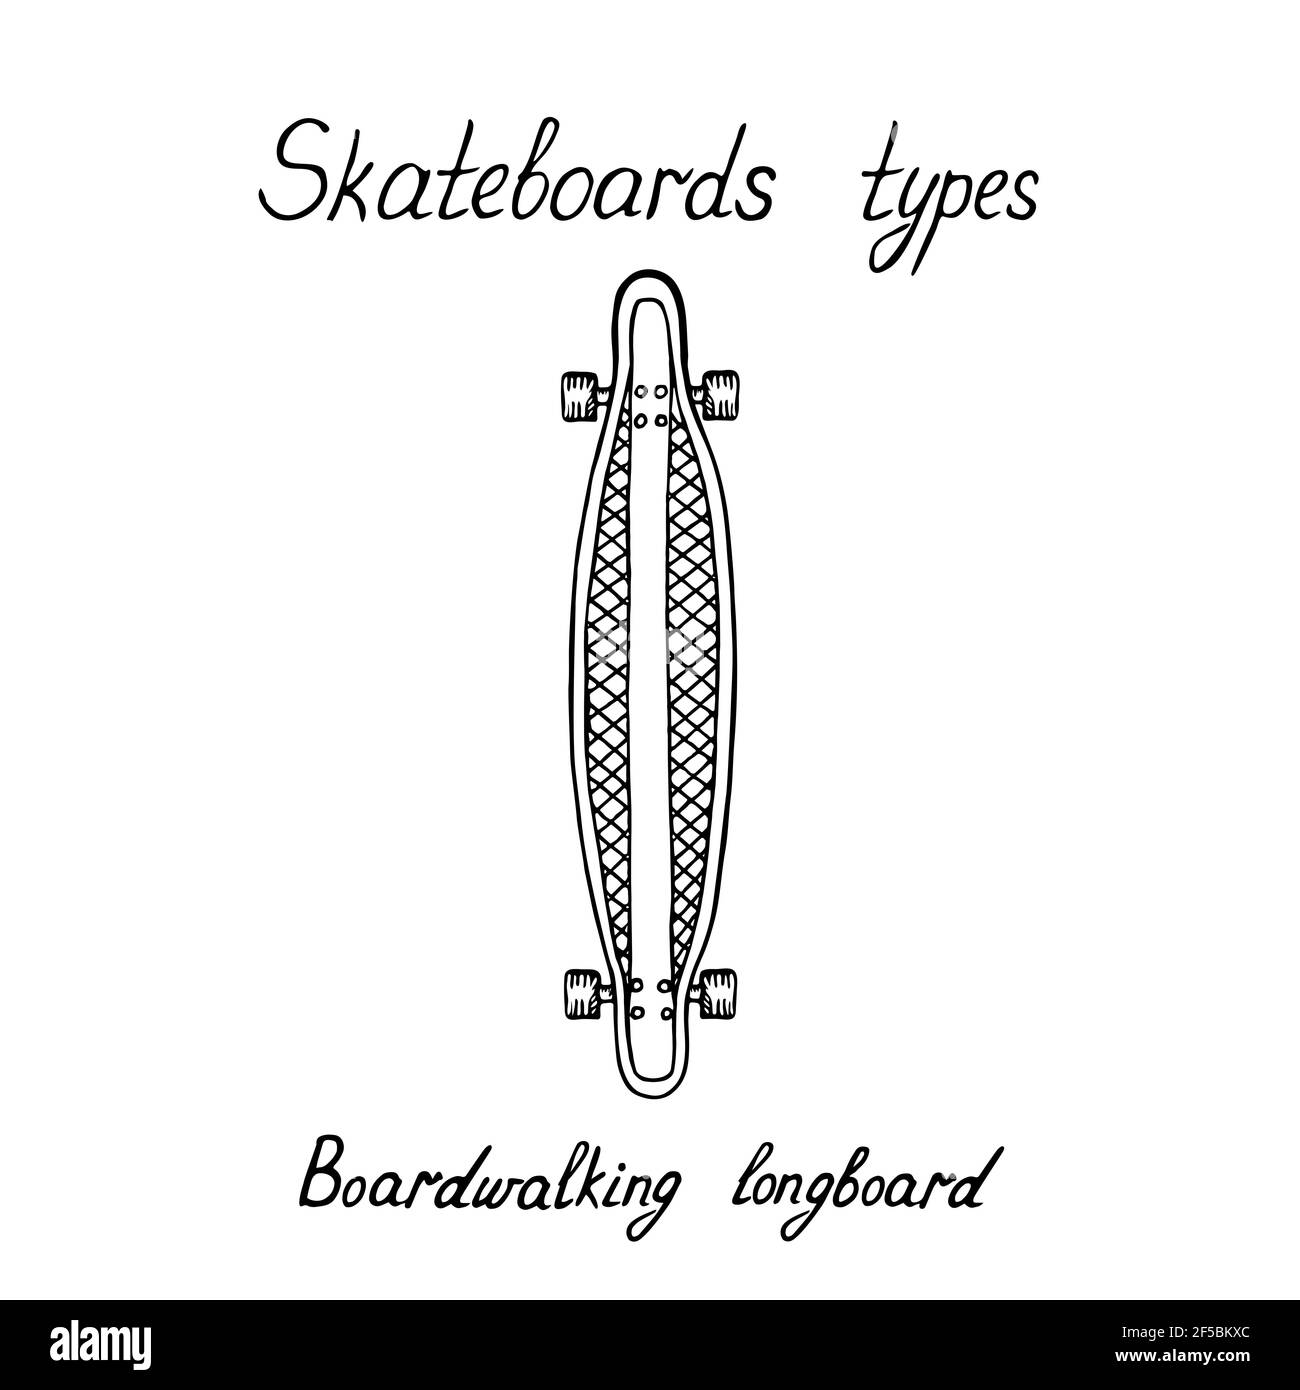 Skaeboard types, Boardwalking longboard, doodle black ink drawing, woodcut style with handwritten inscription Stock Photo